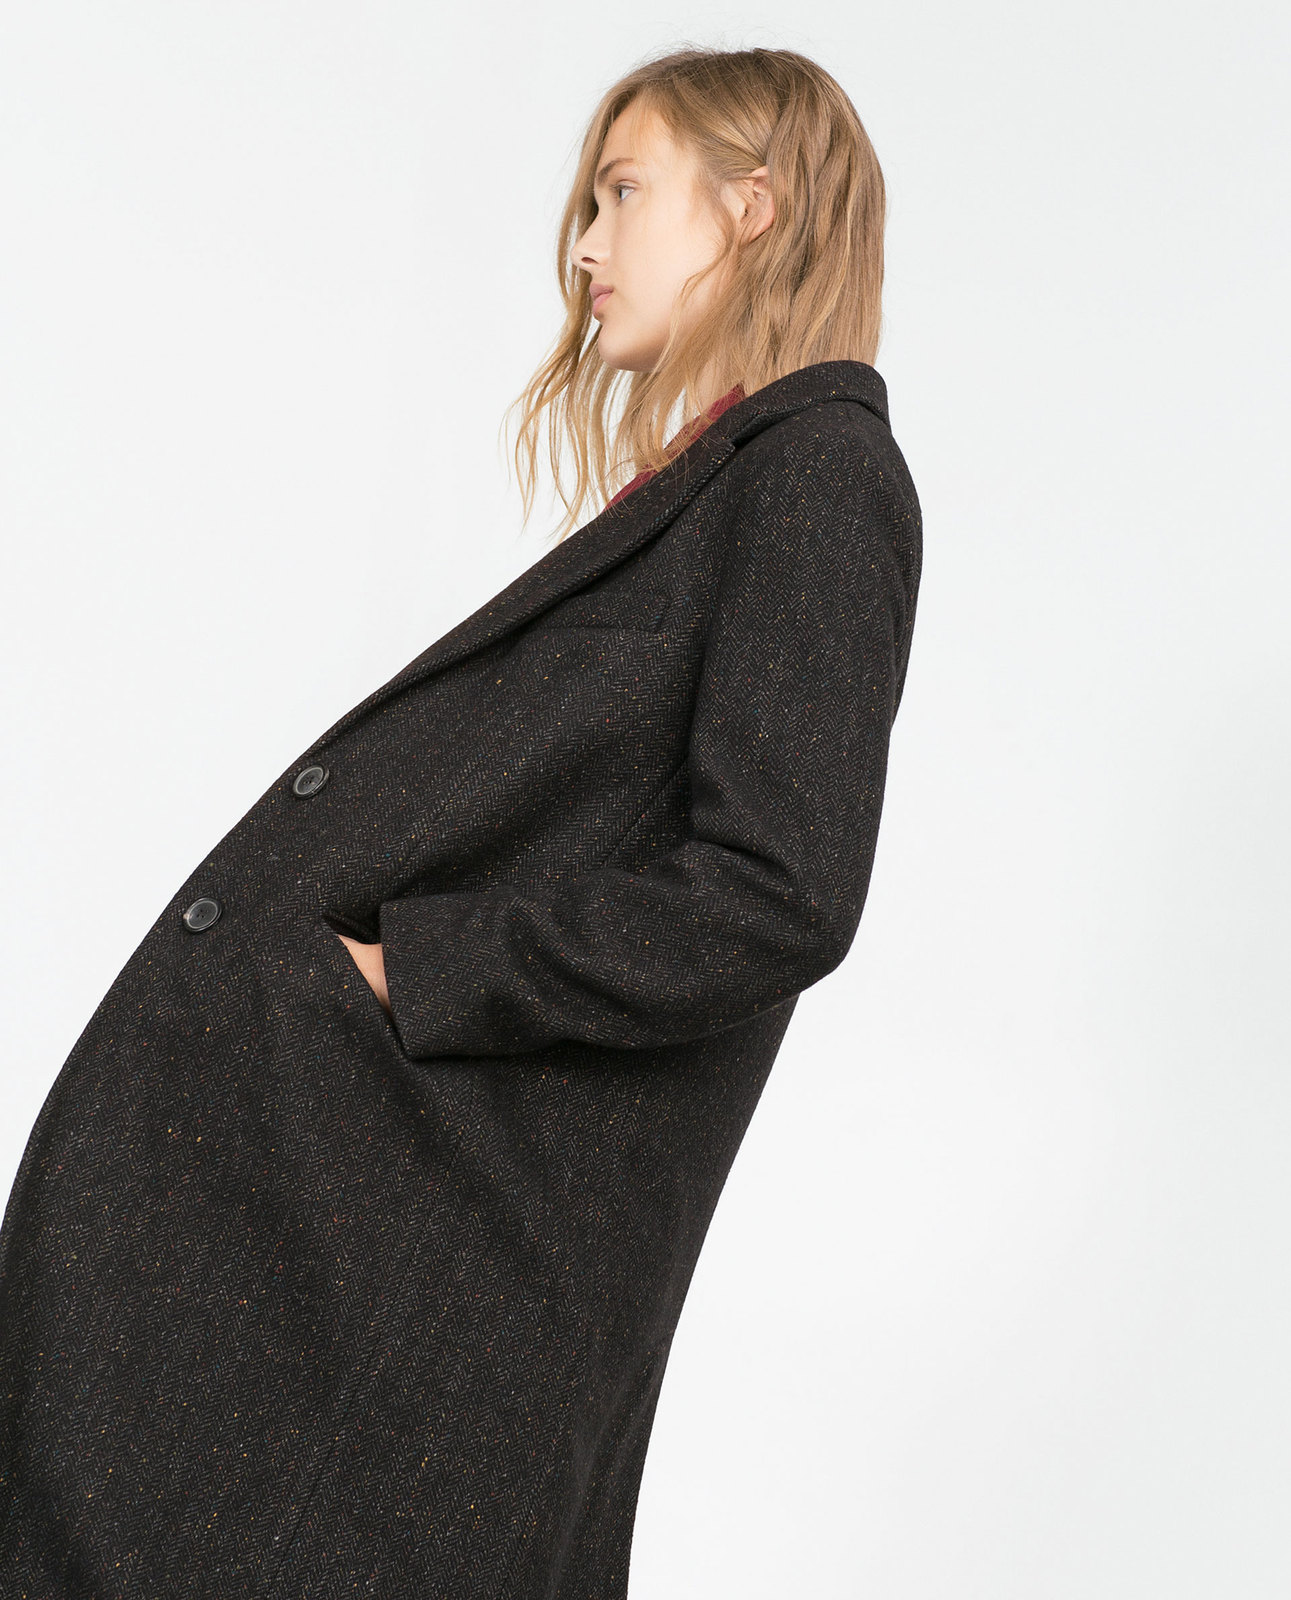 Zara egyenes szabású női kabát 2015.10.15 #88517 fotója